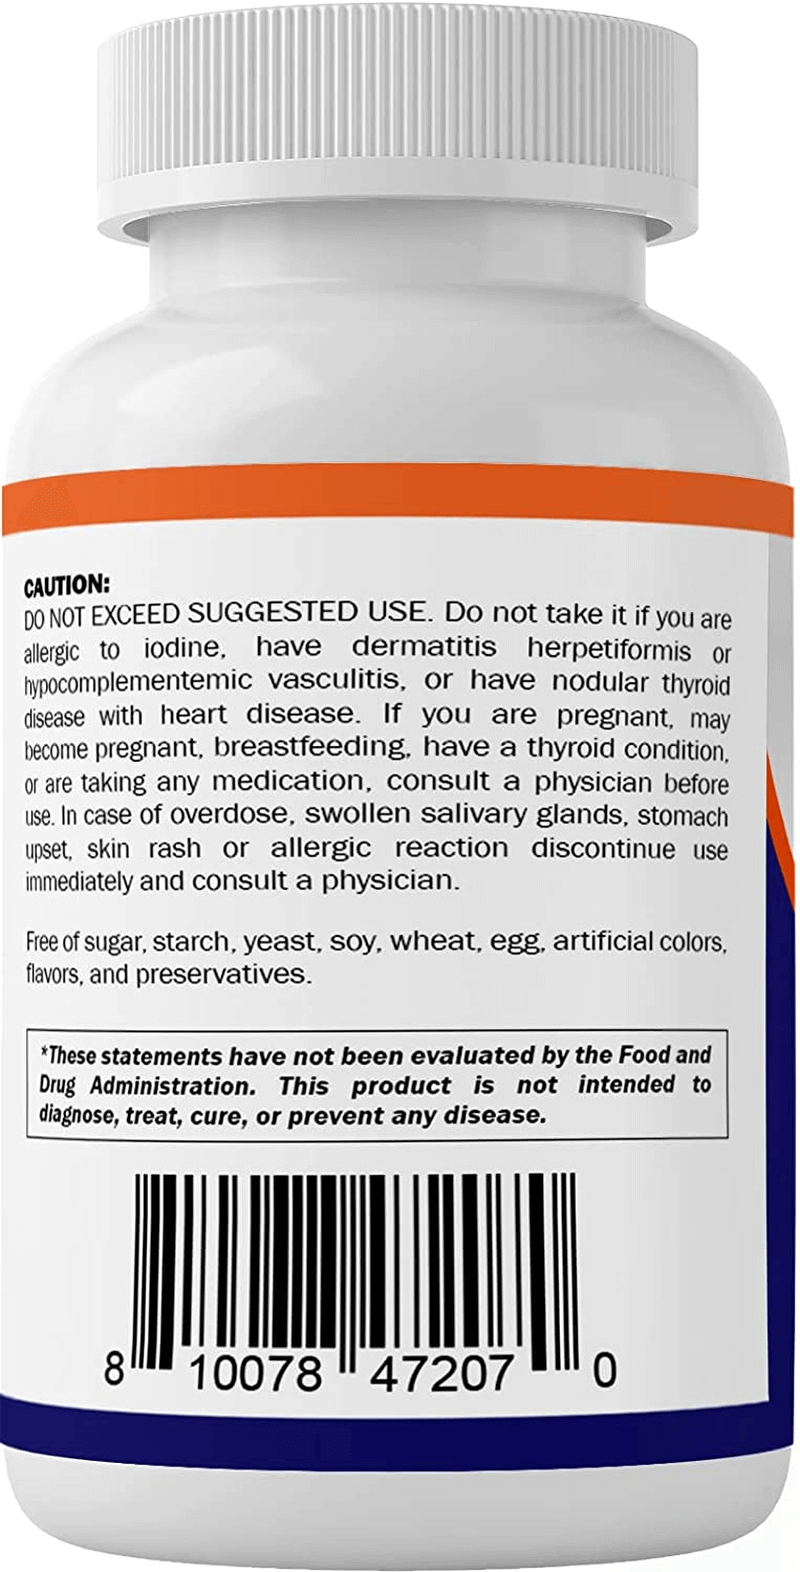 Vitamatic Potassium Iodide 65 Mg per Serving - 60 Tablets - Thyroid Support - Exp Date 03/2025 - vitamenstore.com